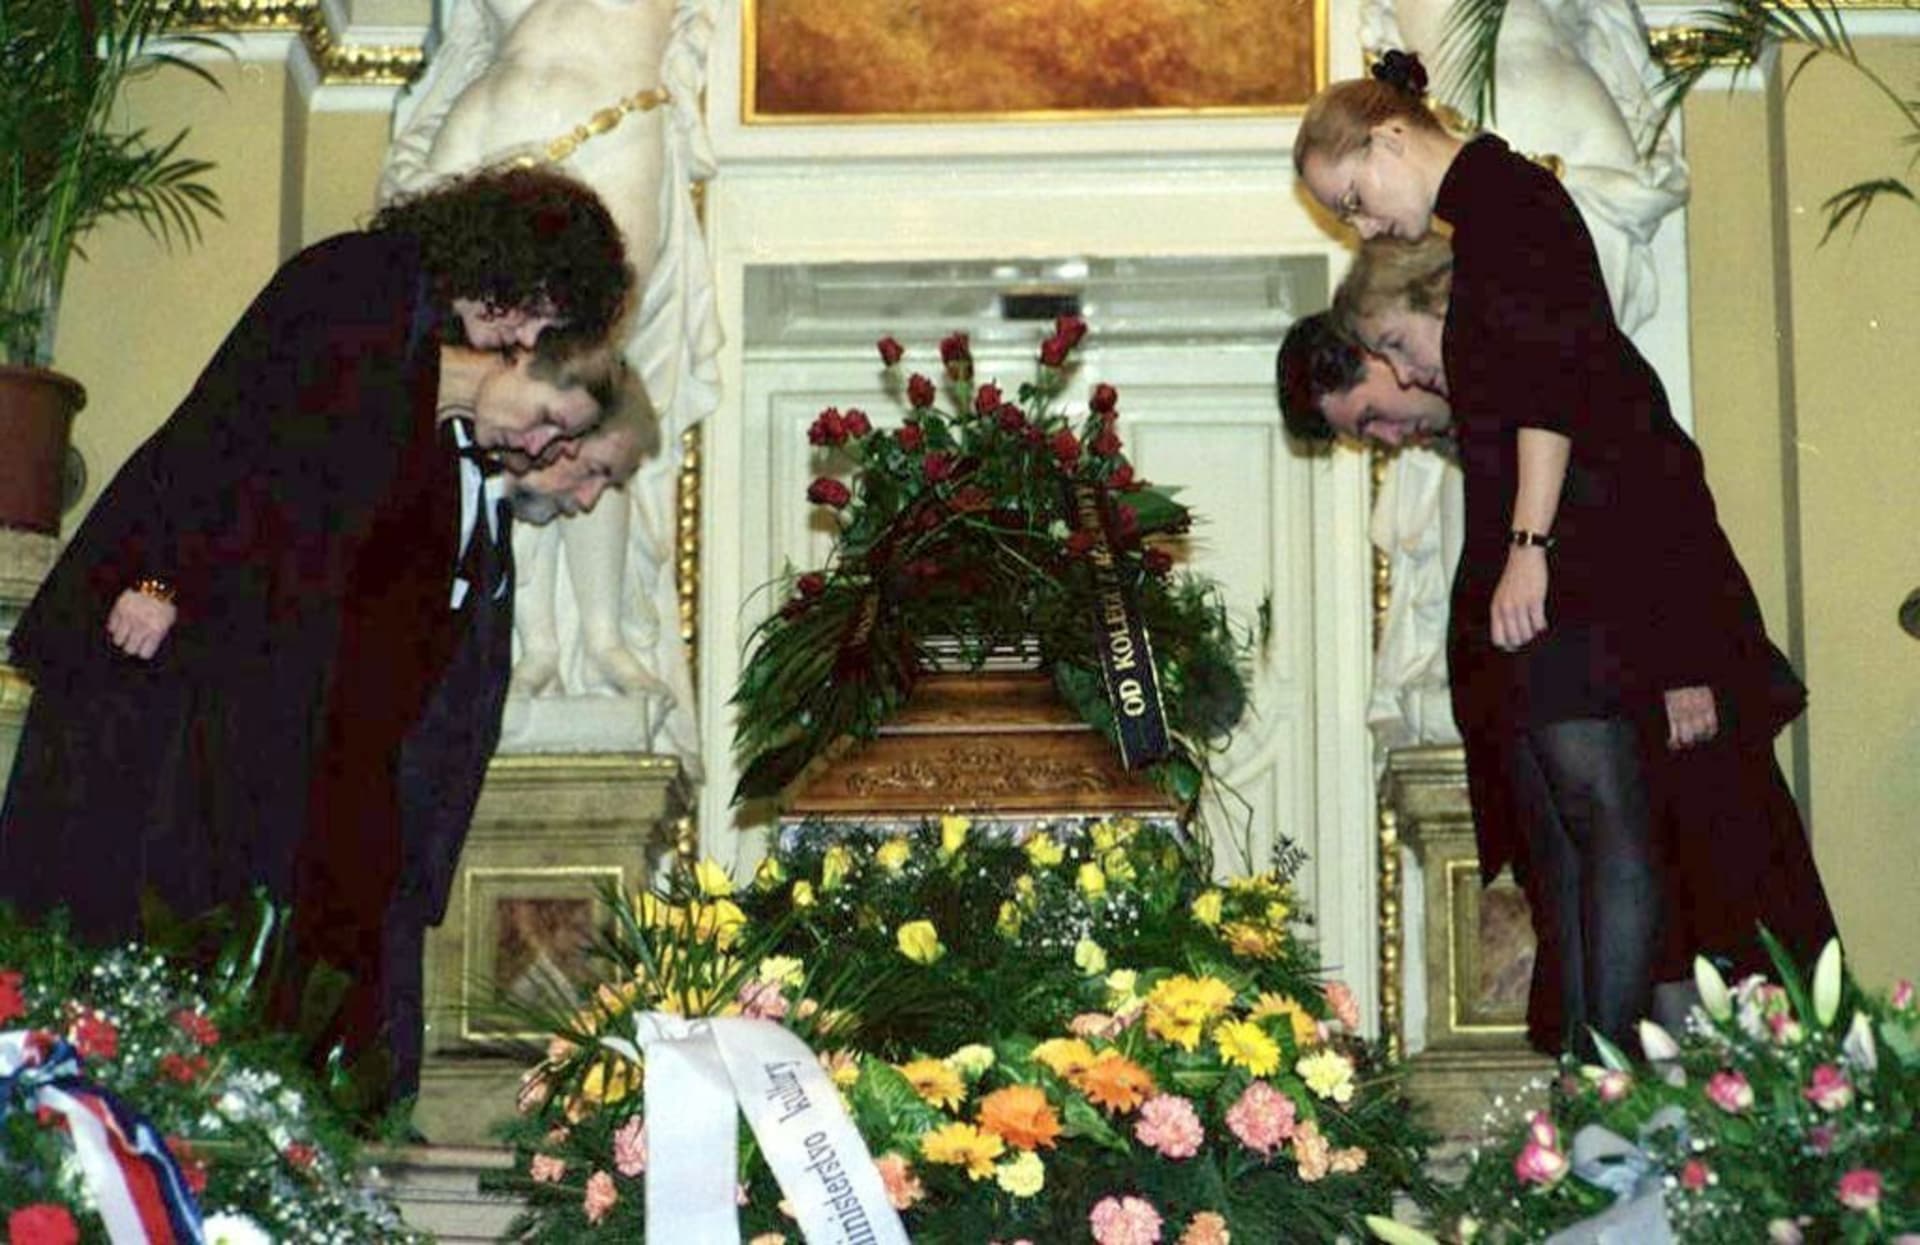 Pohřeb Vlasty Fialové v Mahenově v divadle. Její památce se poklonili kolegové a poslední poctu ji přišly vzdát stovky lidí. 